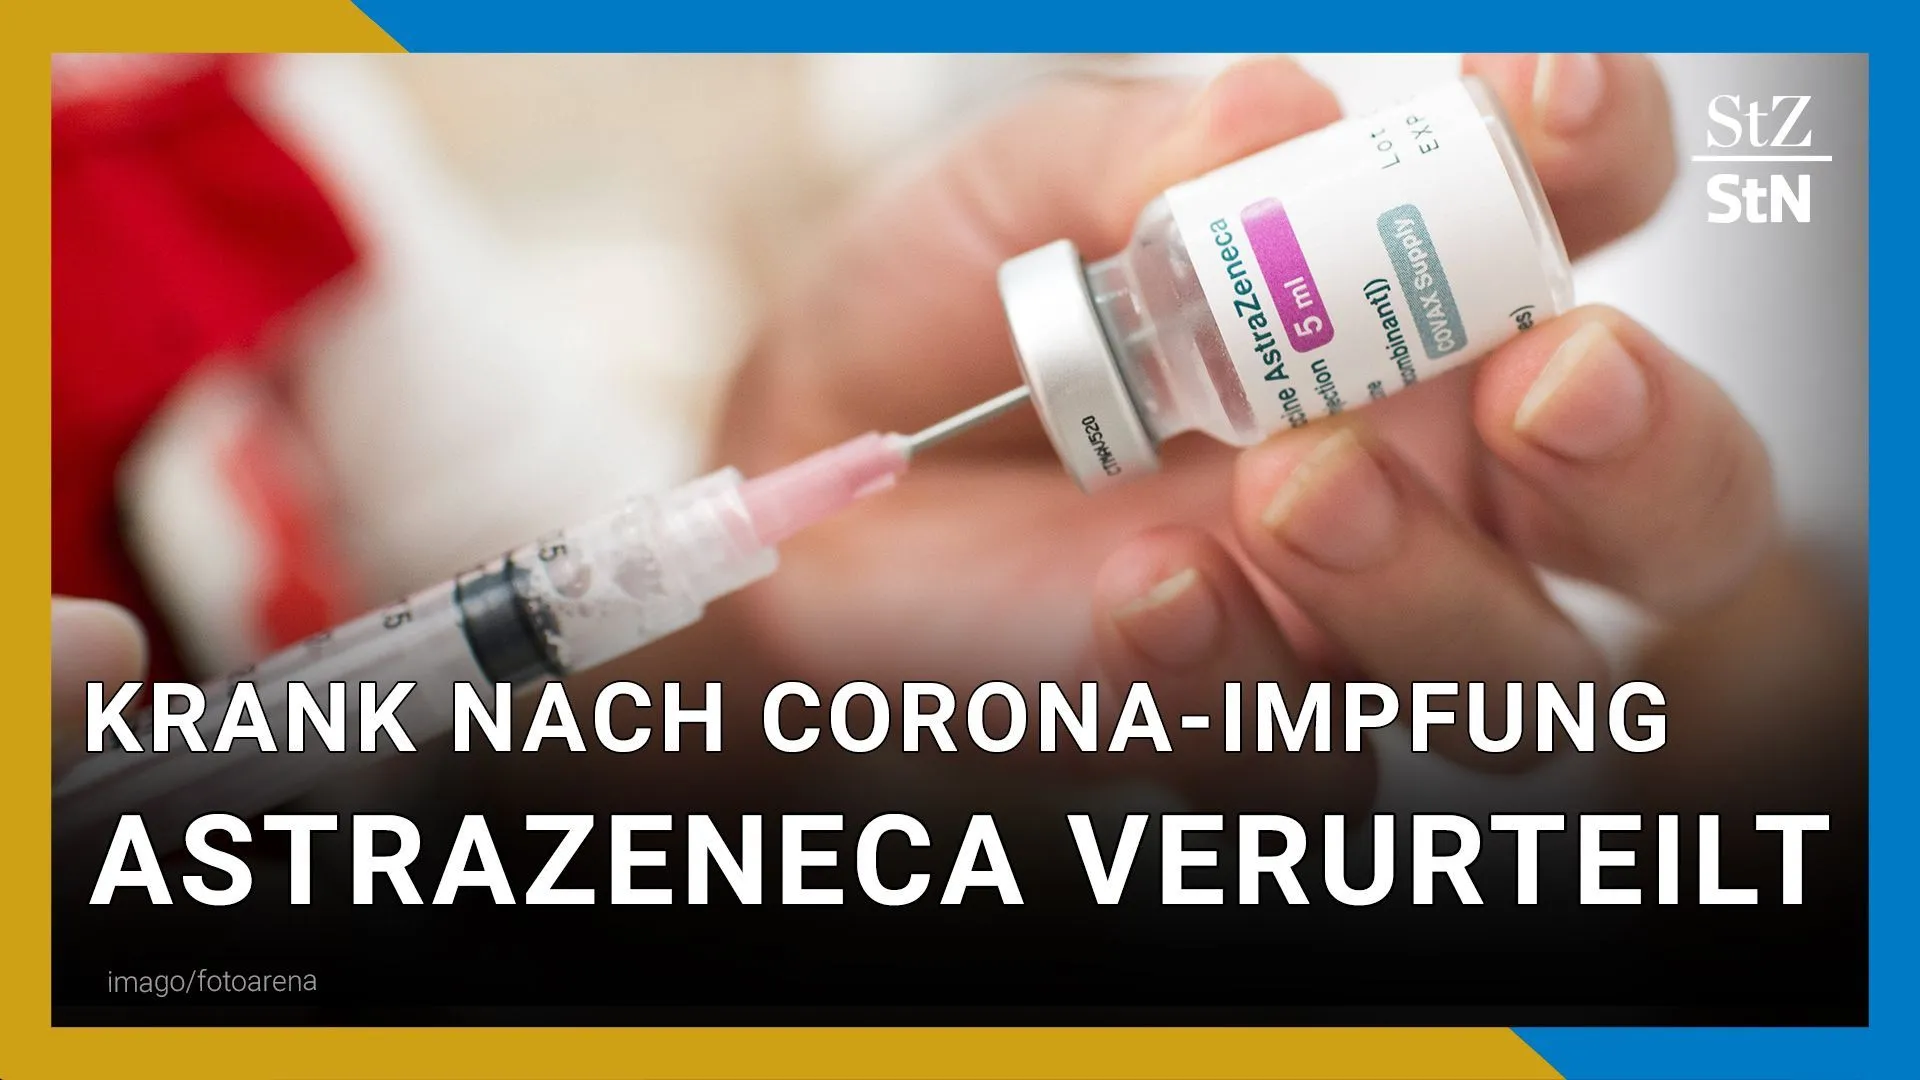 Frau verklagt Covid-19-Impfstoffhersteller | Astrazeneca zu Auskunft verurteilt